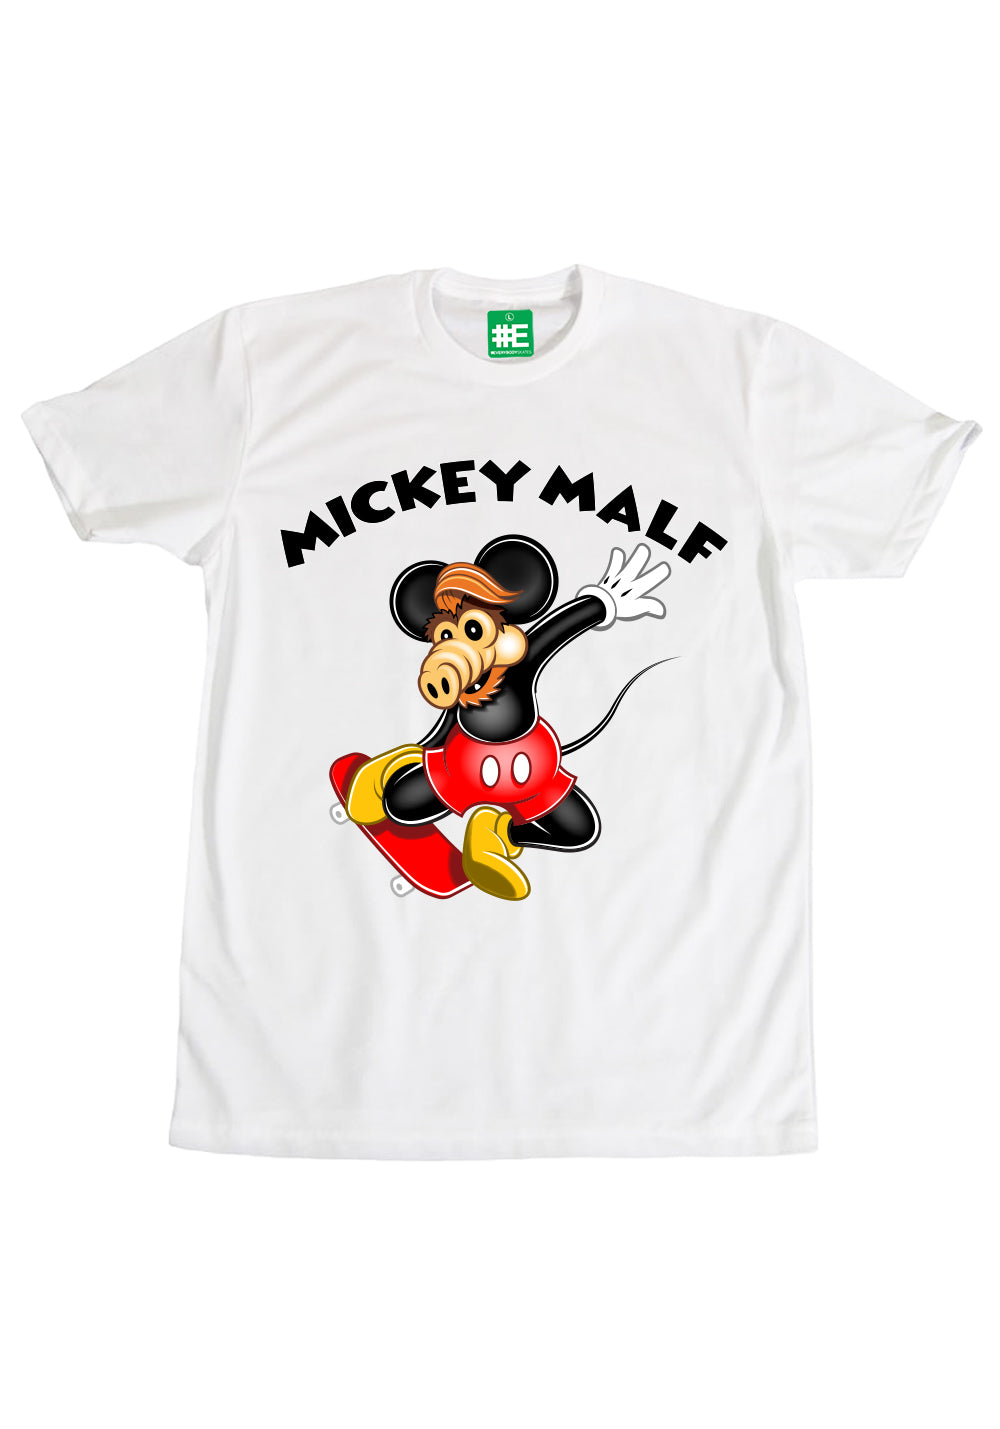 Mickey Malf Graphic Tshirt